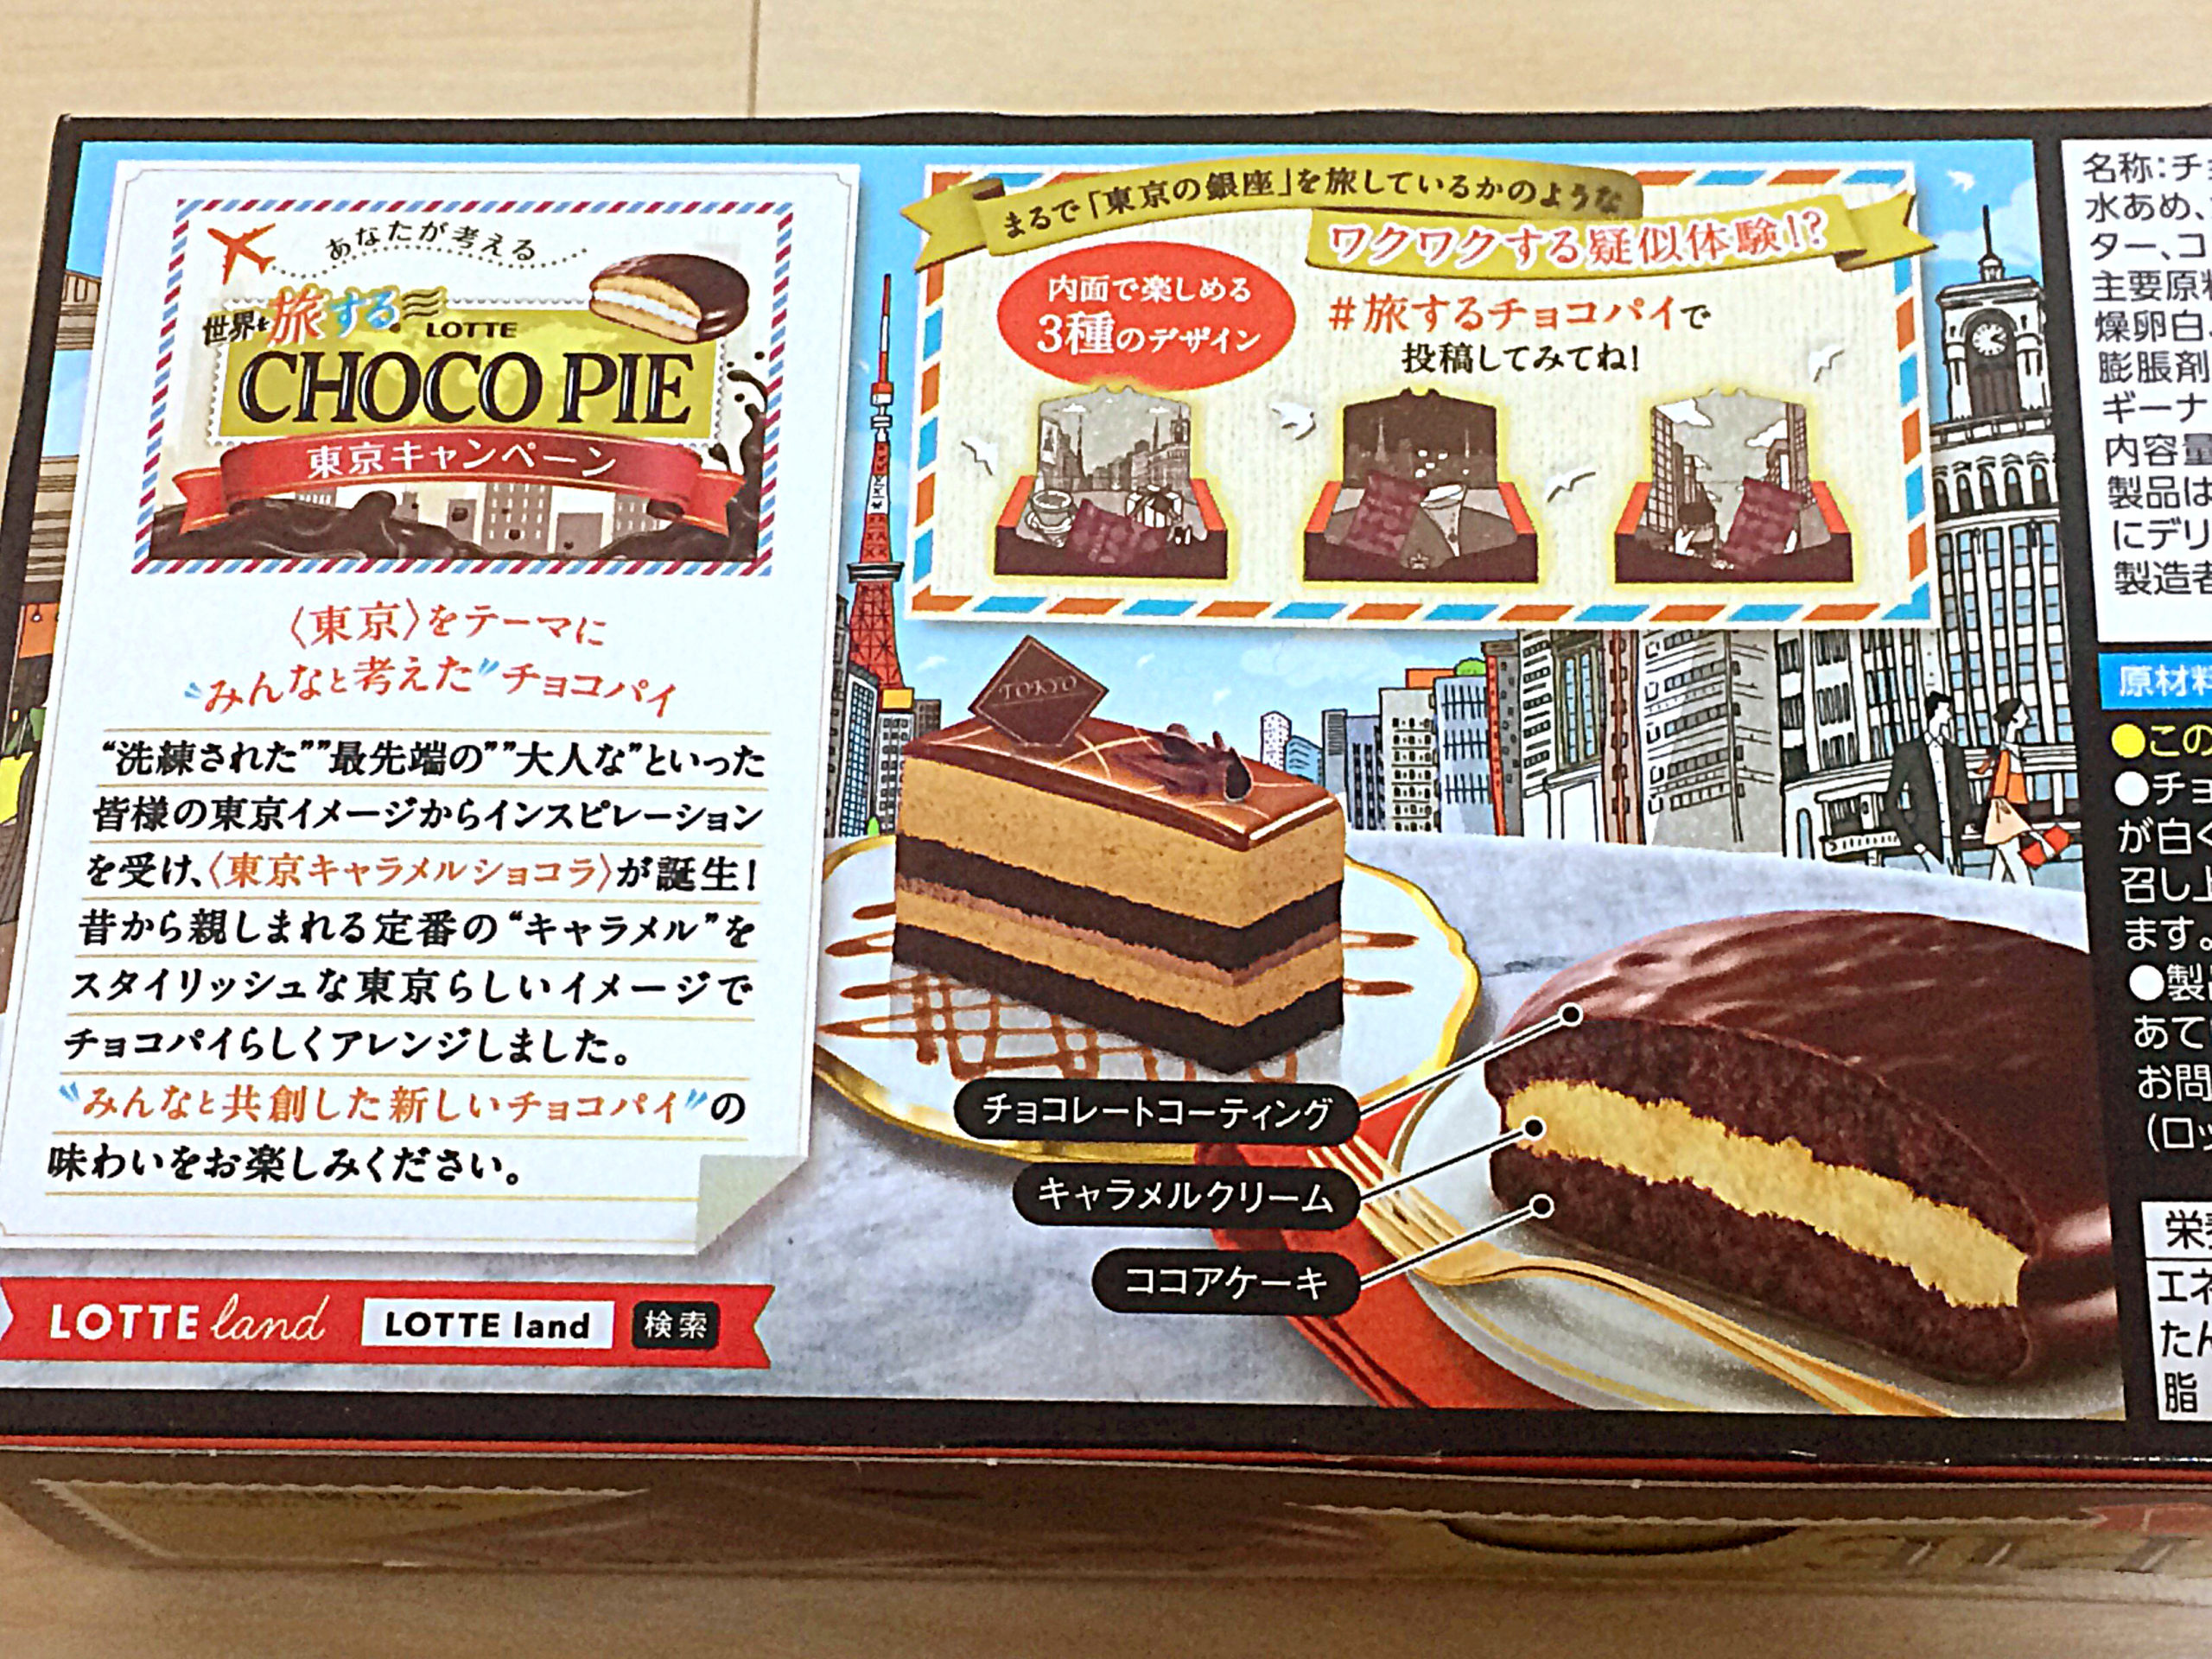 ロッテ 世界を旅する チョコパイ 東京キャラメルショコラ Nyainの新商品